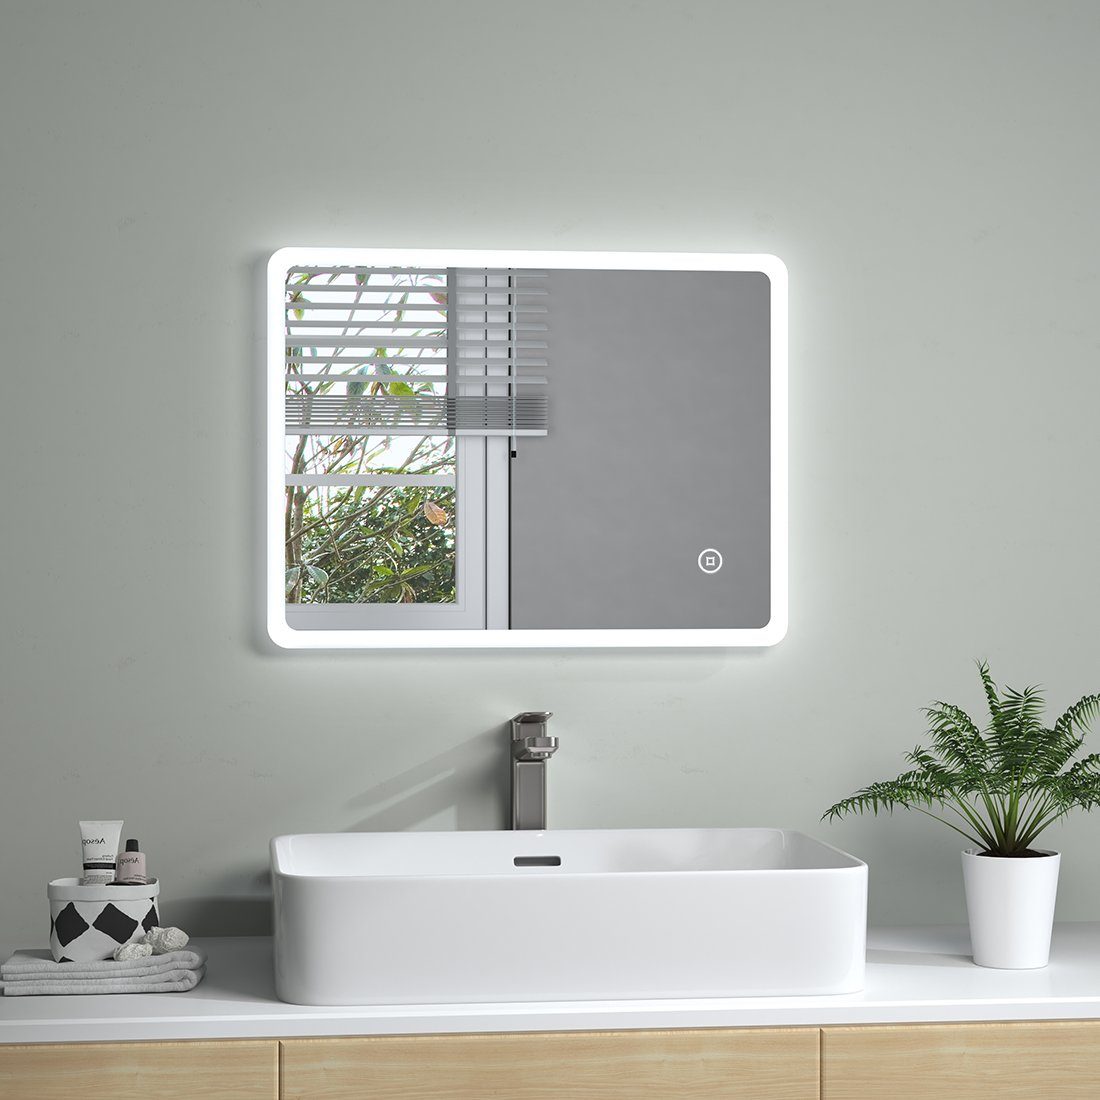 S'AFIELINA Badspiegel LED Wandspiegel mit Beleuchtung Wandspiegel  Lichtspiegel, 45 x 60cm,6500K  Kaltweiß,Touchschalter,Energiesparend,Wandmontage